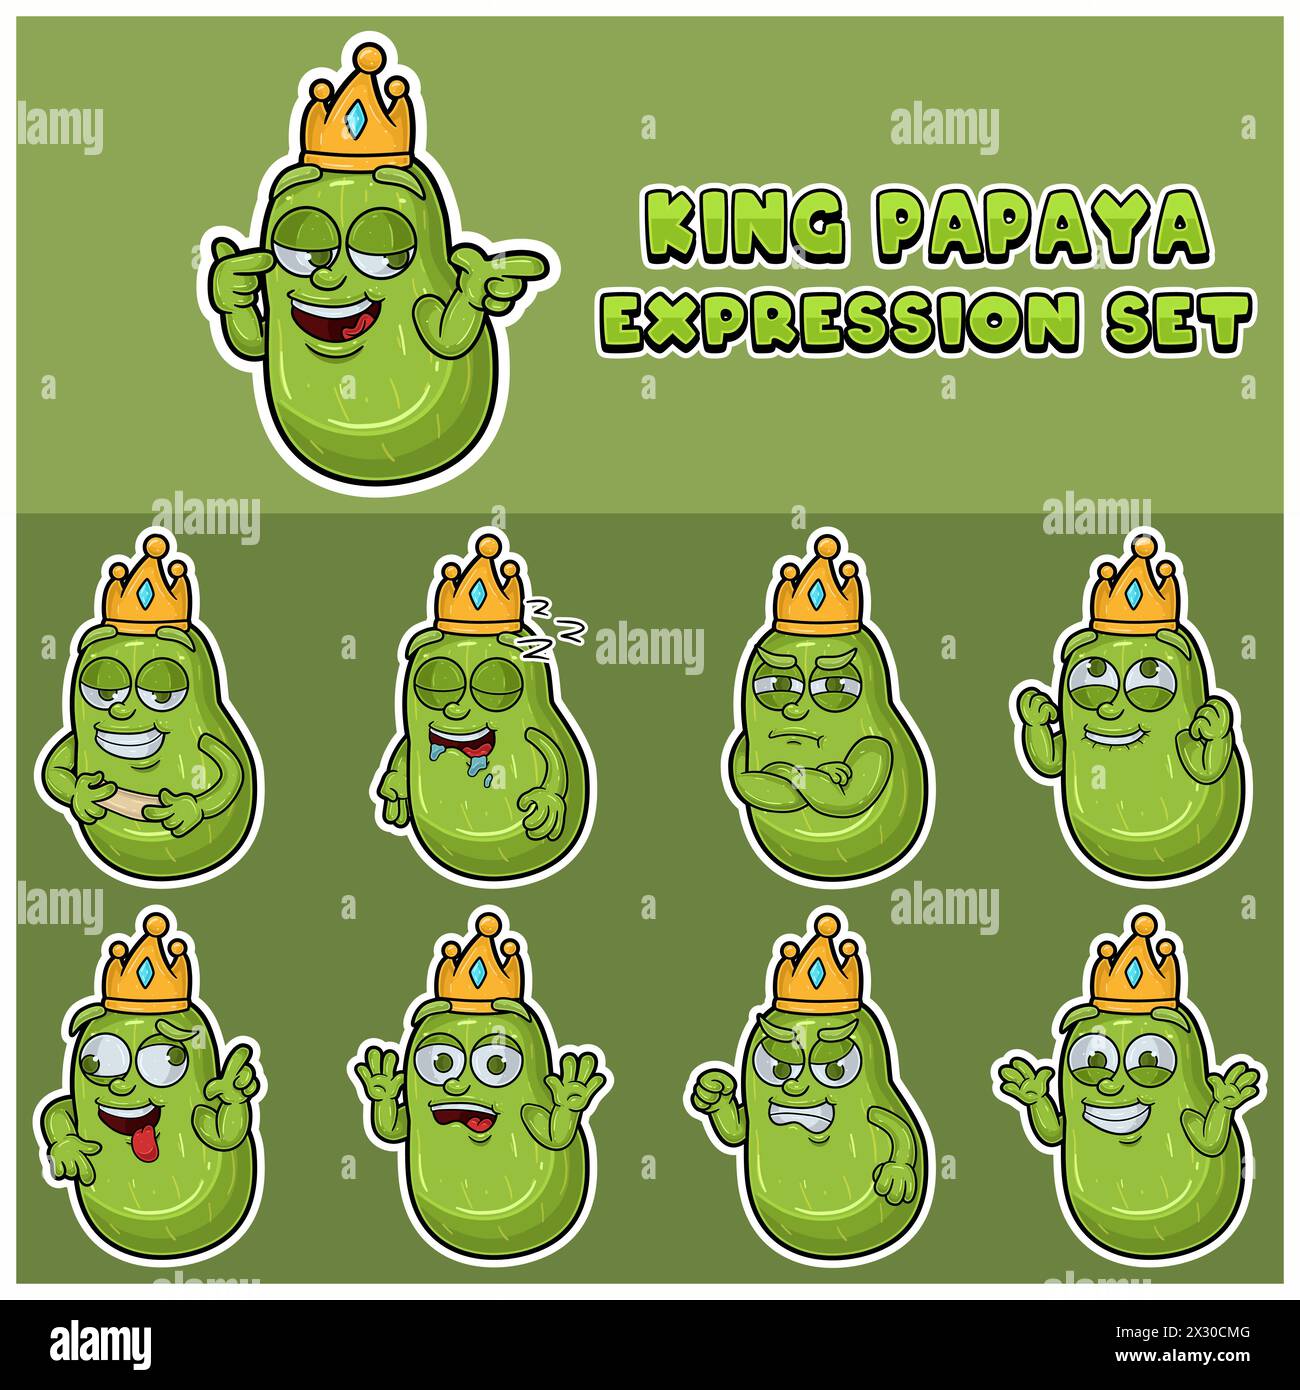 Cartoon Maskottchen von Papaya Fuit Charakter mit König und Ausdruck Set. Vektor Und Illustration Stock Vektor